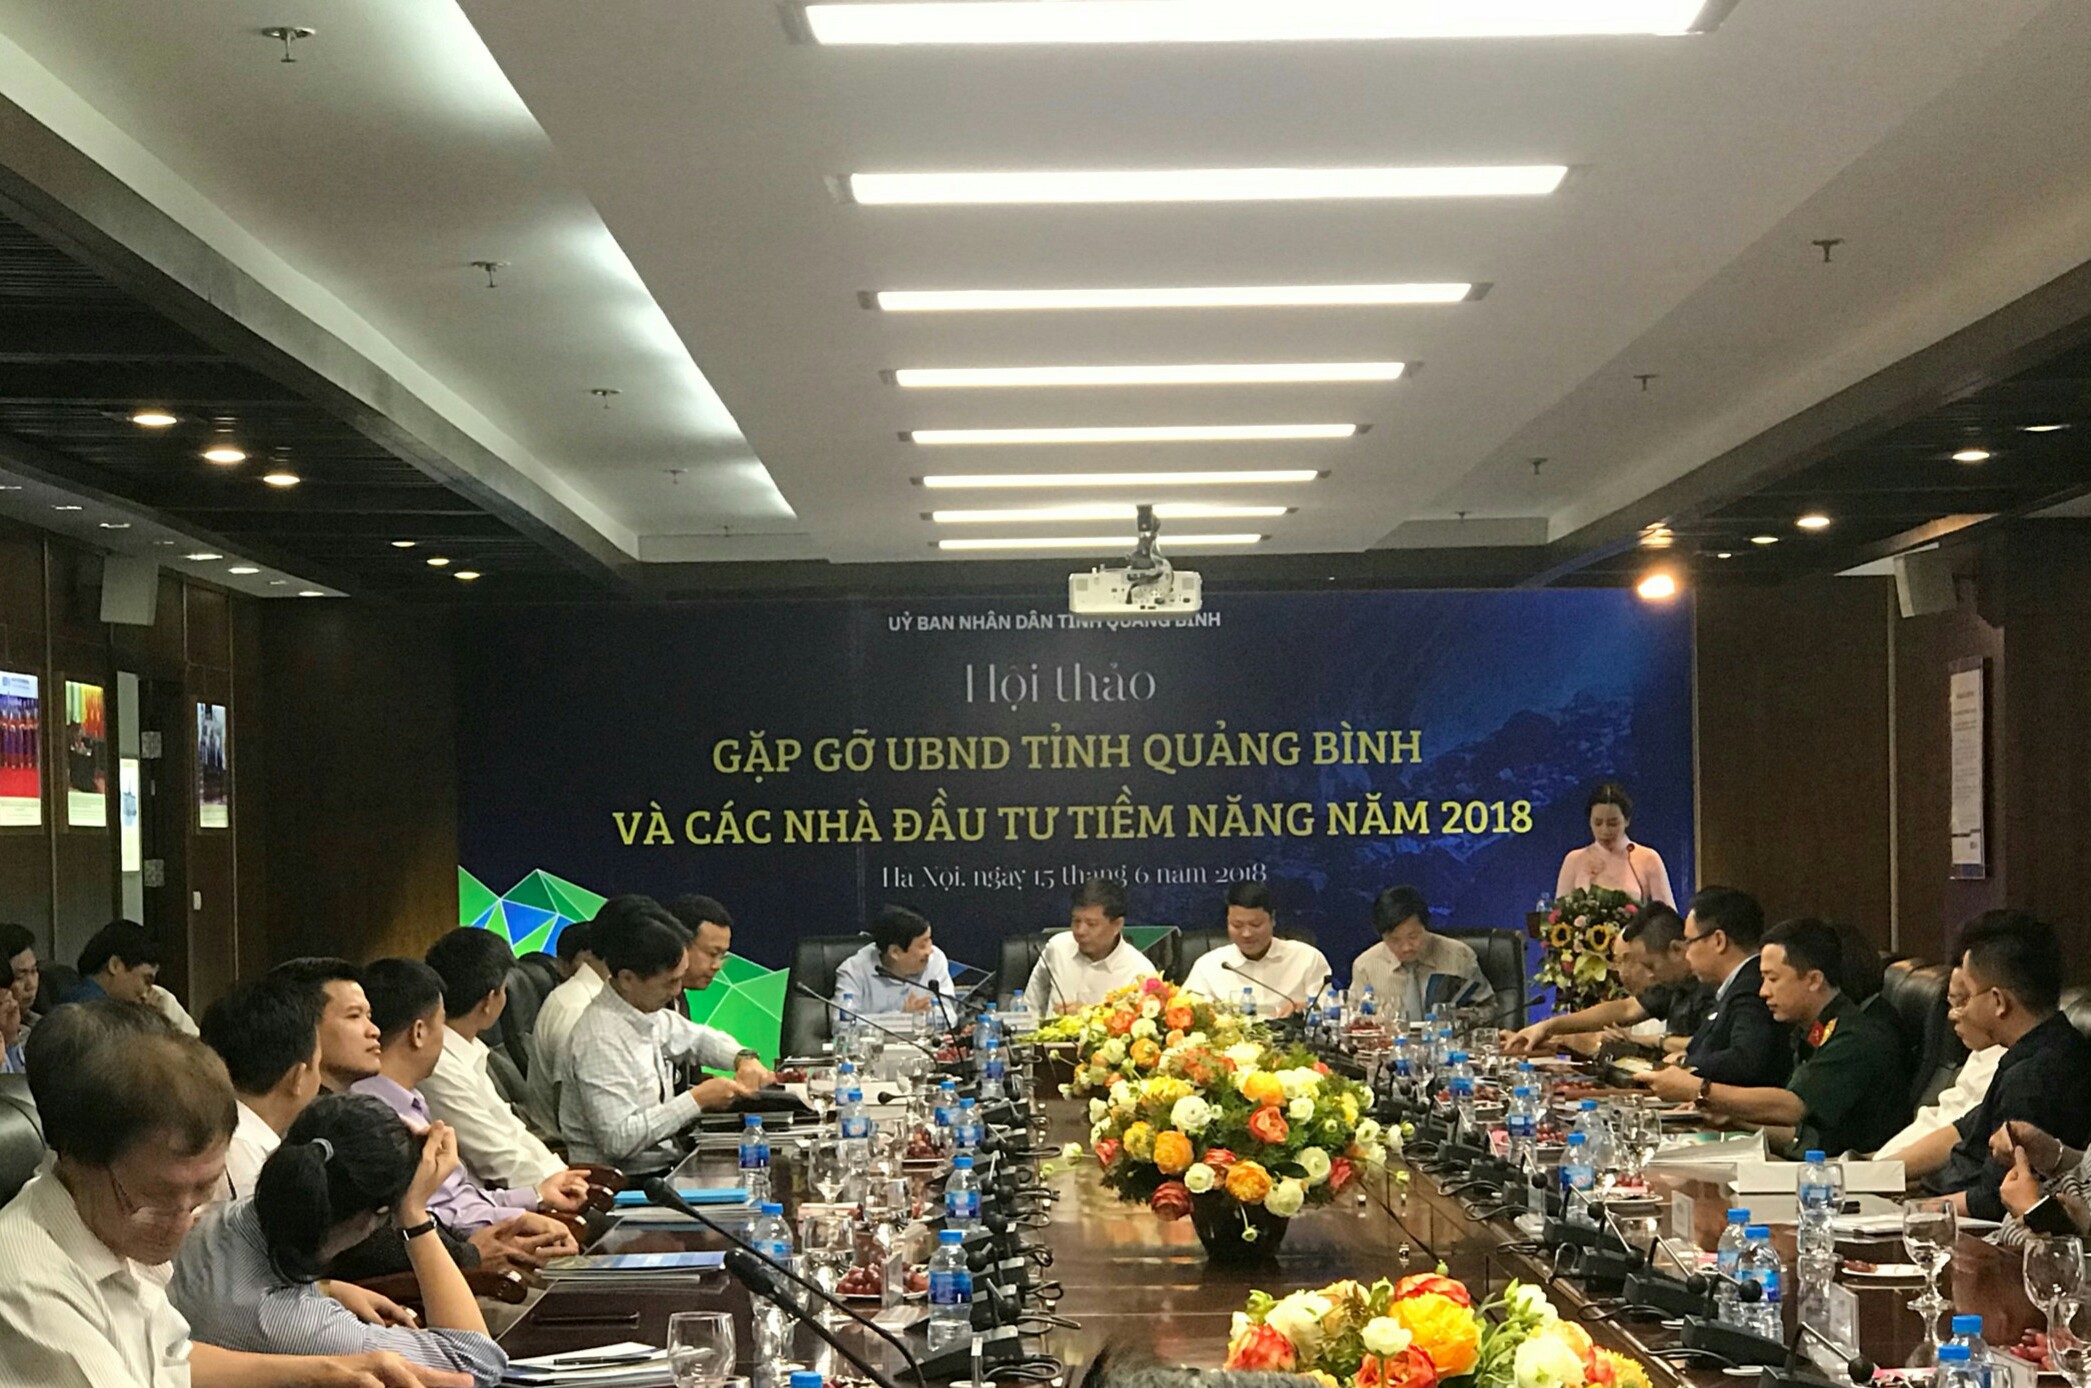 Hội thảo thu hút sự quan tâm của nhiều nhà đầu tư tại Hà Nội.